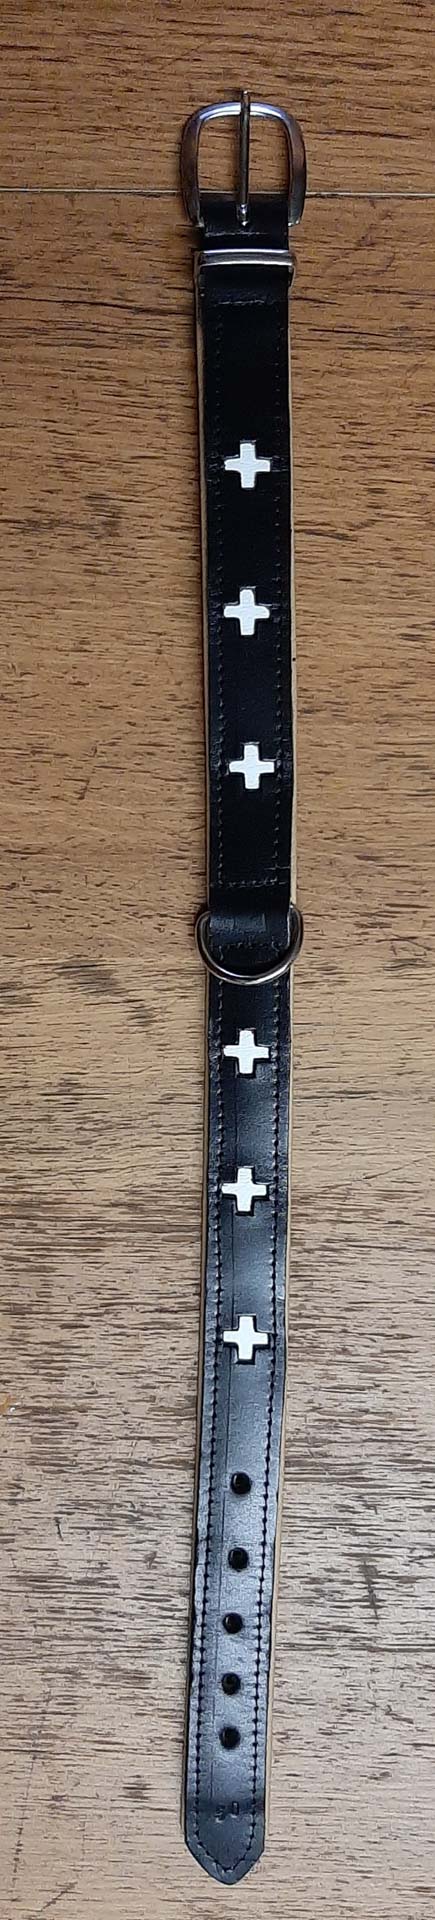 Ausverkauf: Halsband, schwarz mit weissen Kreuzen